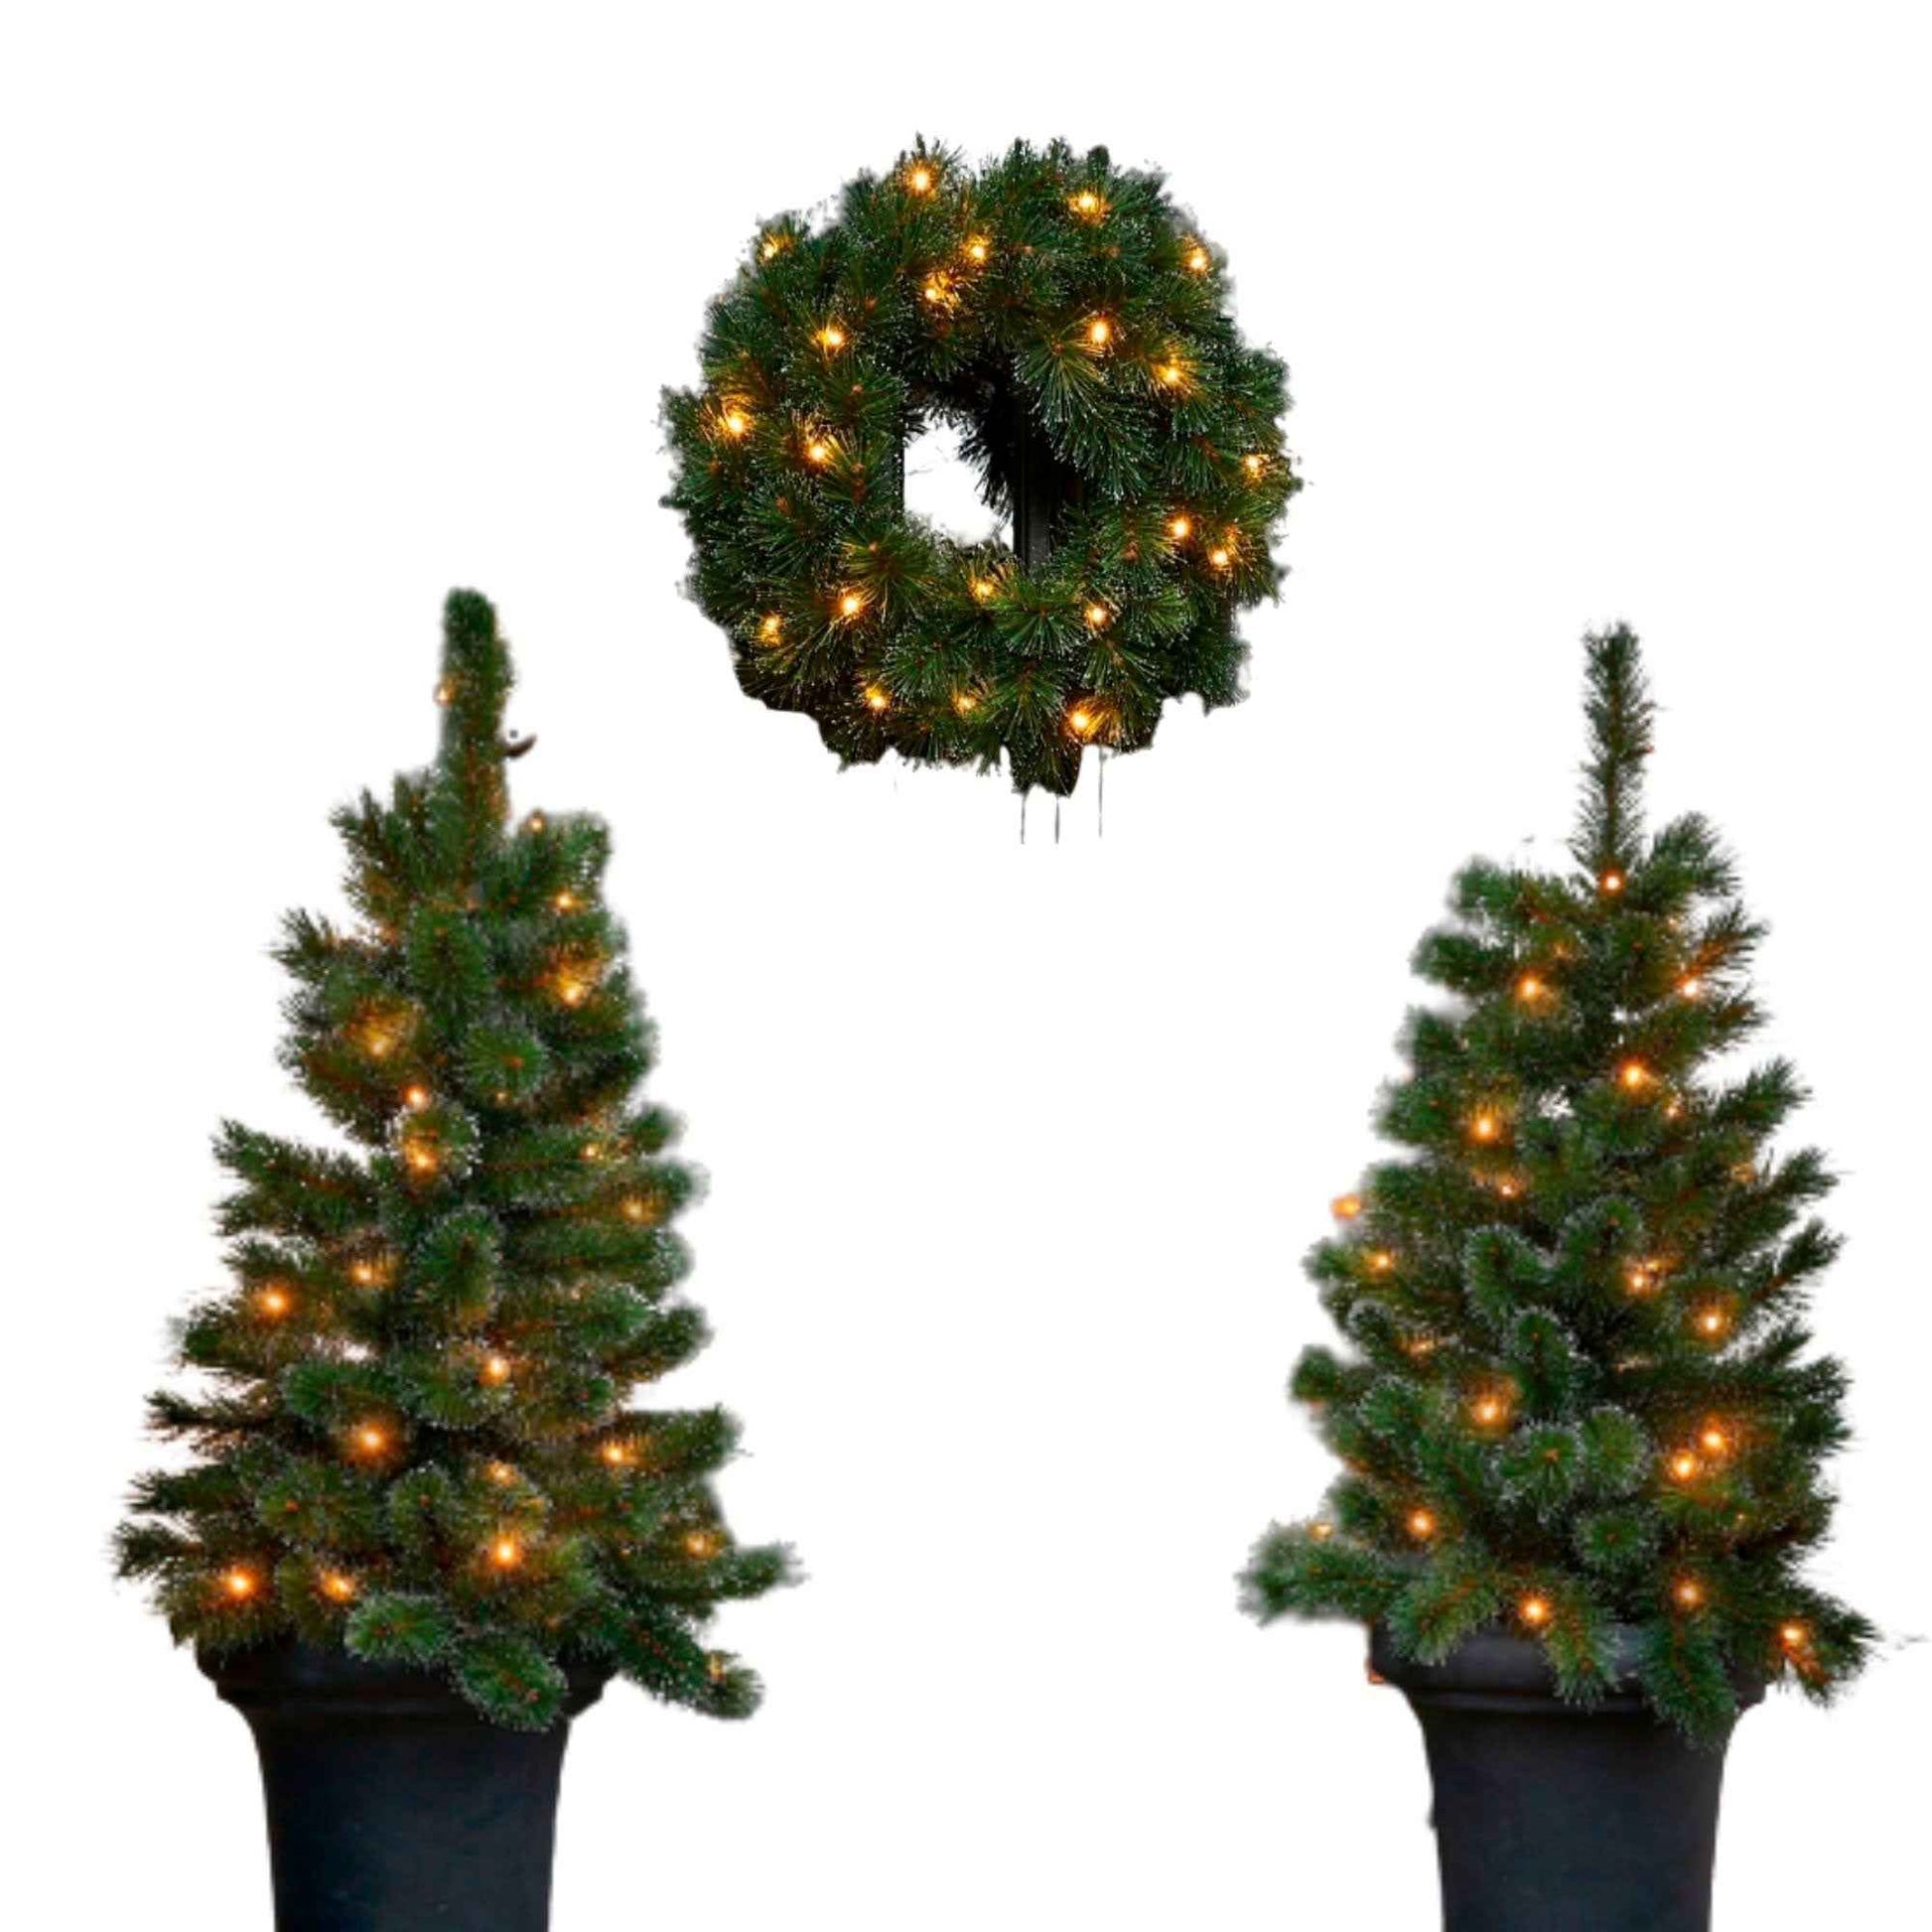 Black Box 2x Schneebedeckter künstlicher Weihnachtsbaum + 1x Adventskranz Glendon inkl. LED-Beleuchtung - Kunstweihnachtsbäume